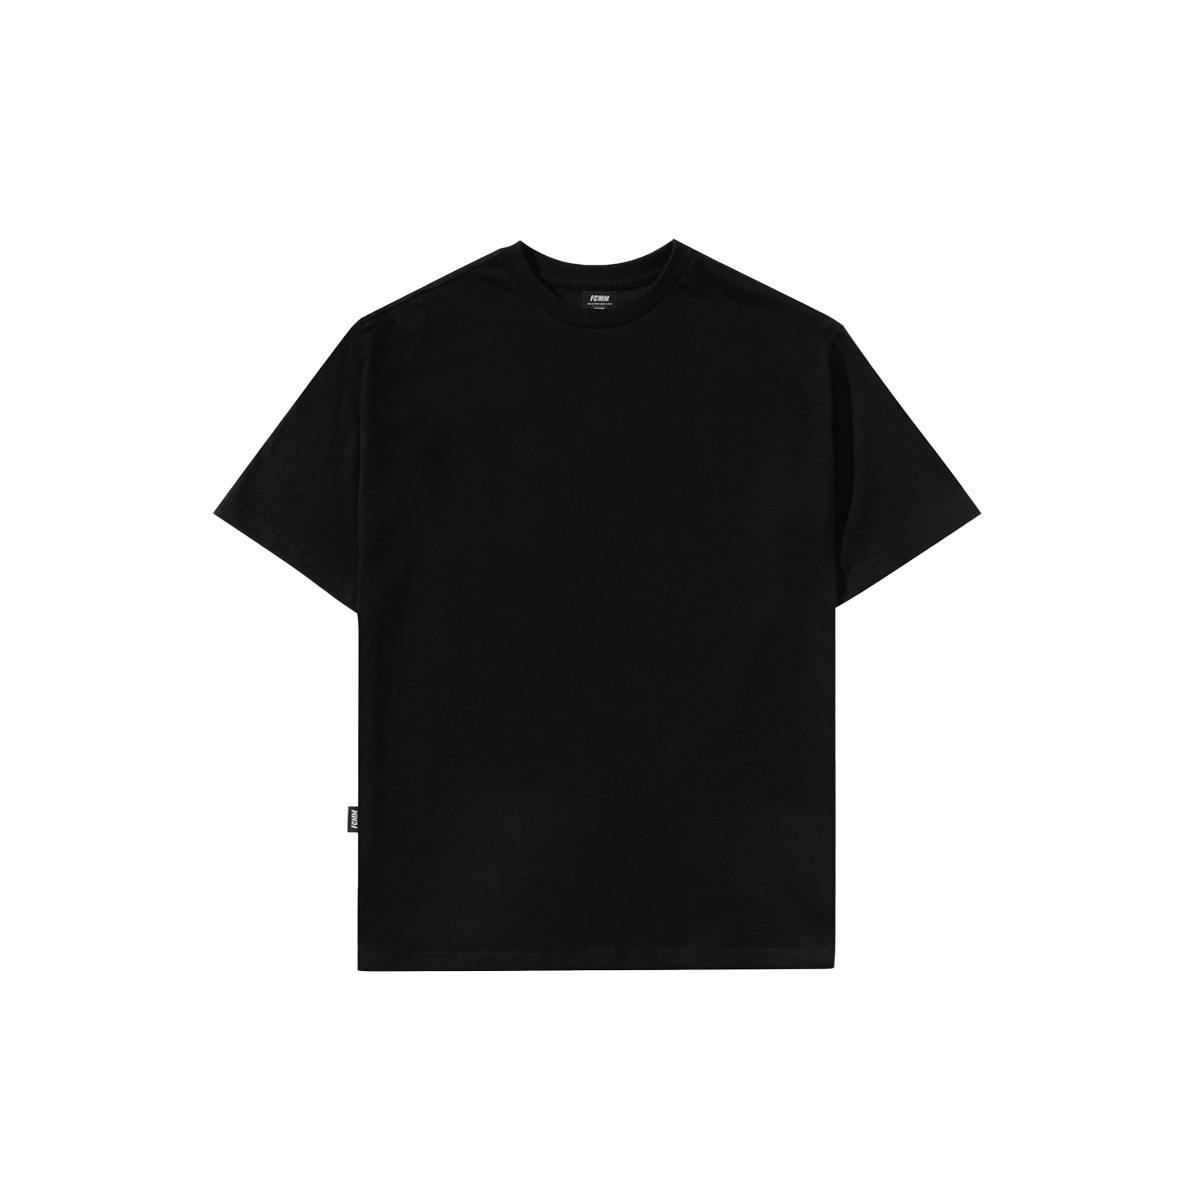 클럽 레이어드 티셔츠 - 블랙